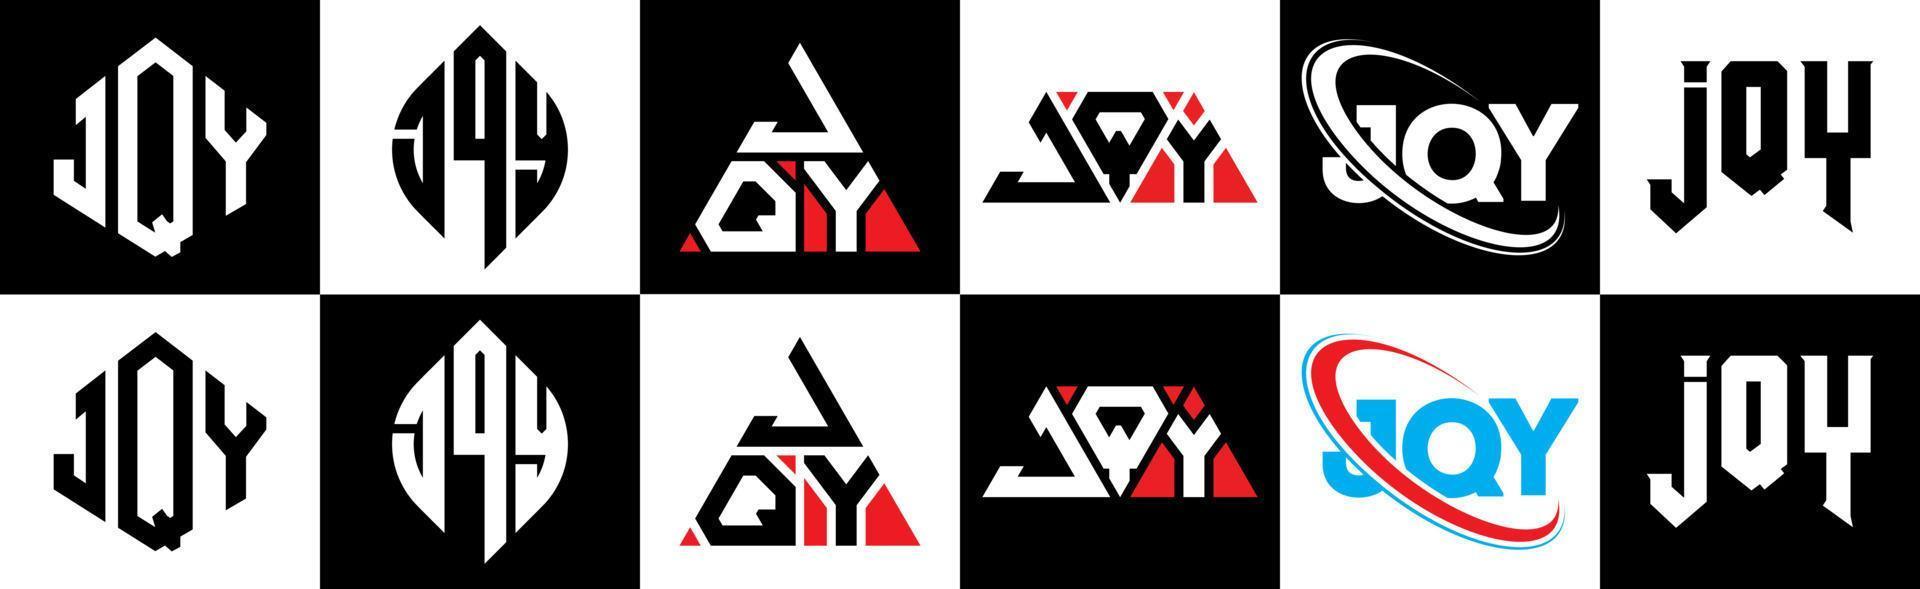 Diseño de logotipo de letra jqy en seis estilos. jqy polígono, círculo, triángulo, hexágono, estilo plano y simple con logotipo de letra de variación de color blanco y negro en una mesa de trabajo. logotipo jqy minimalista y clásico vector